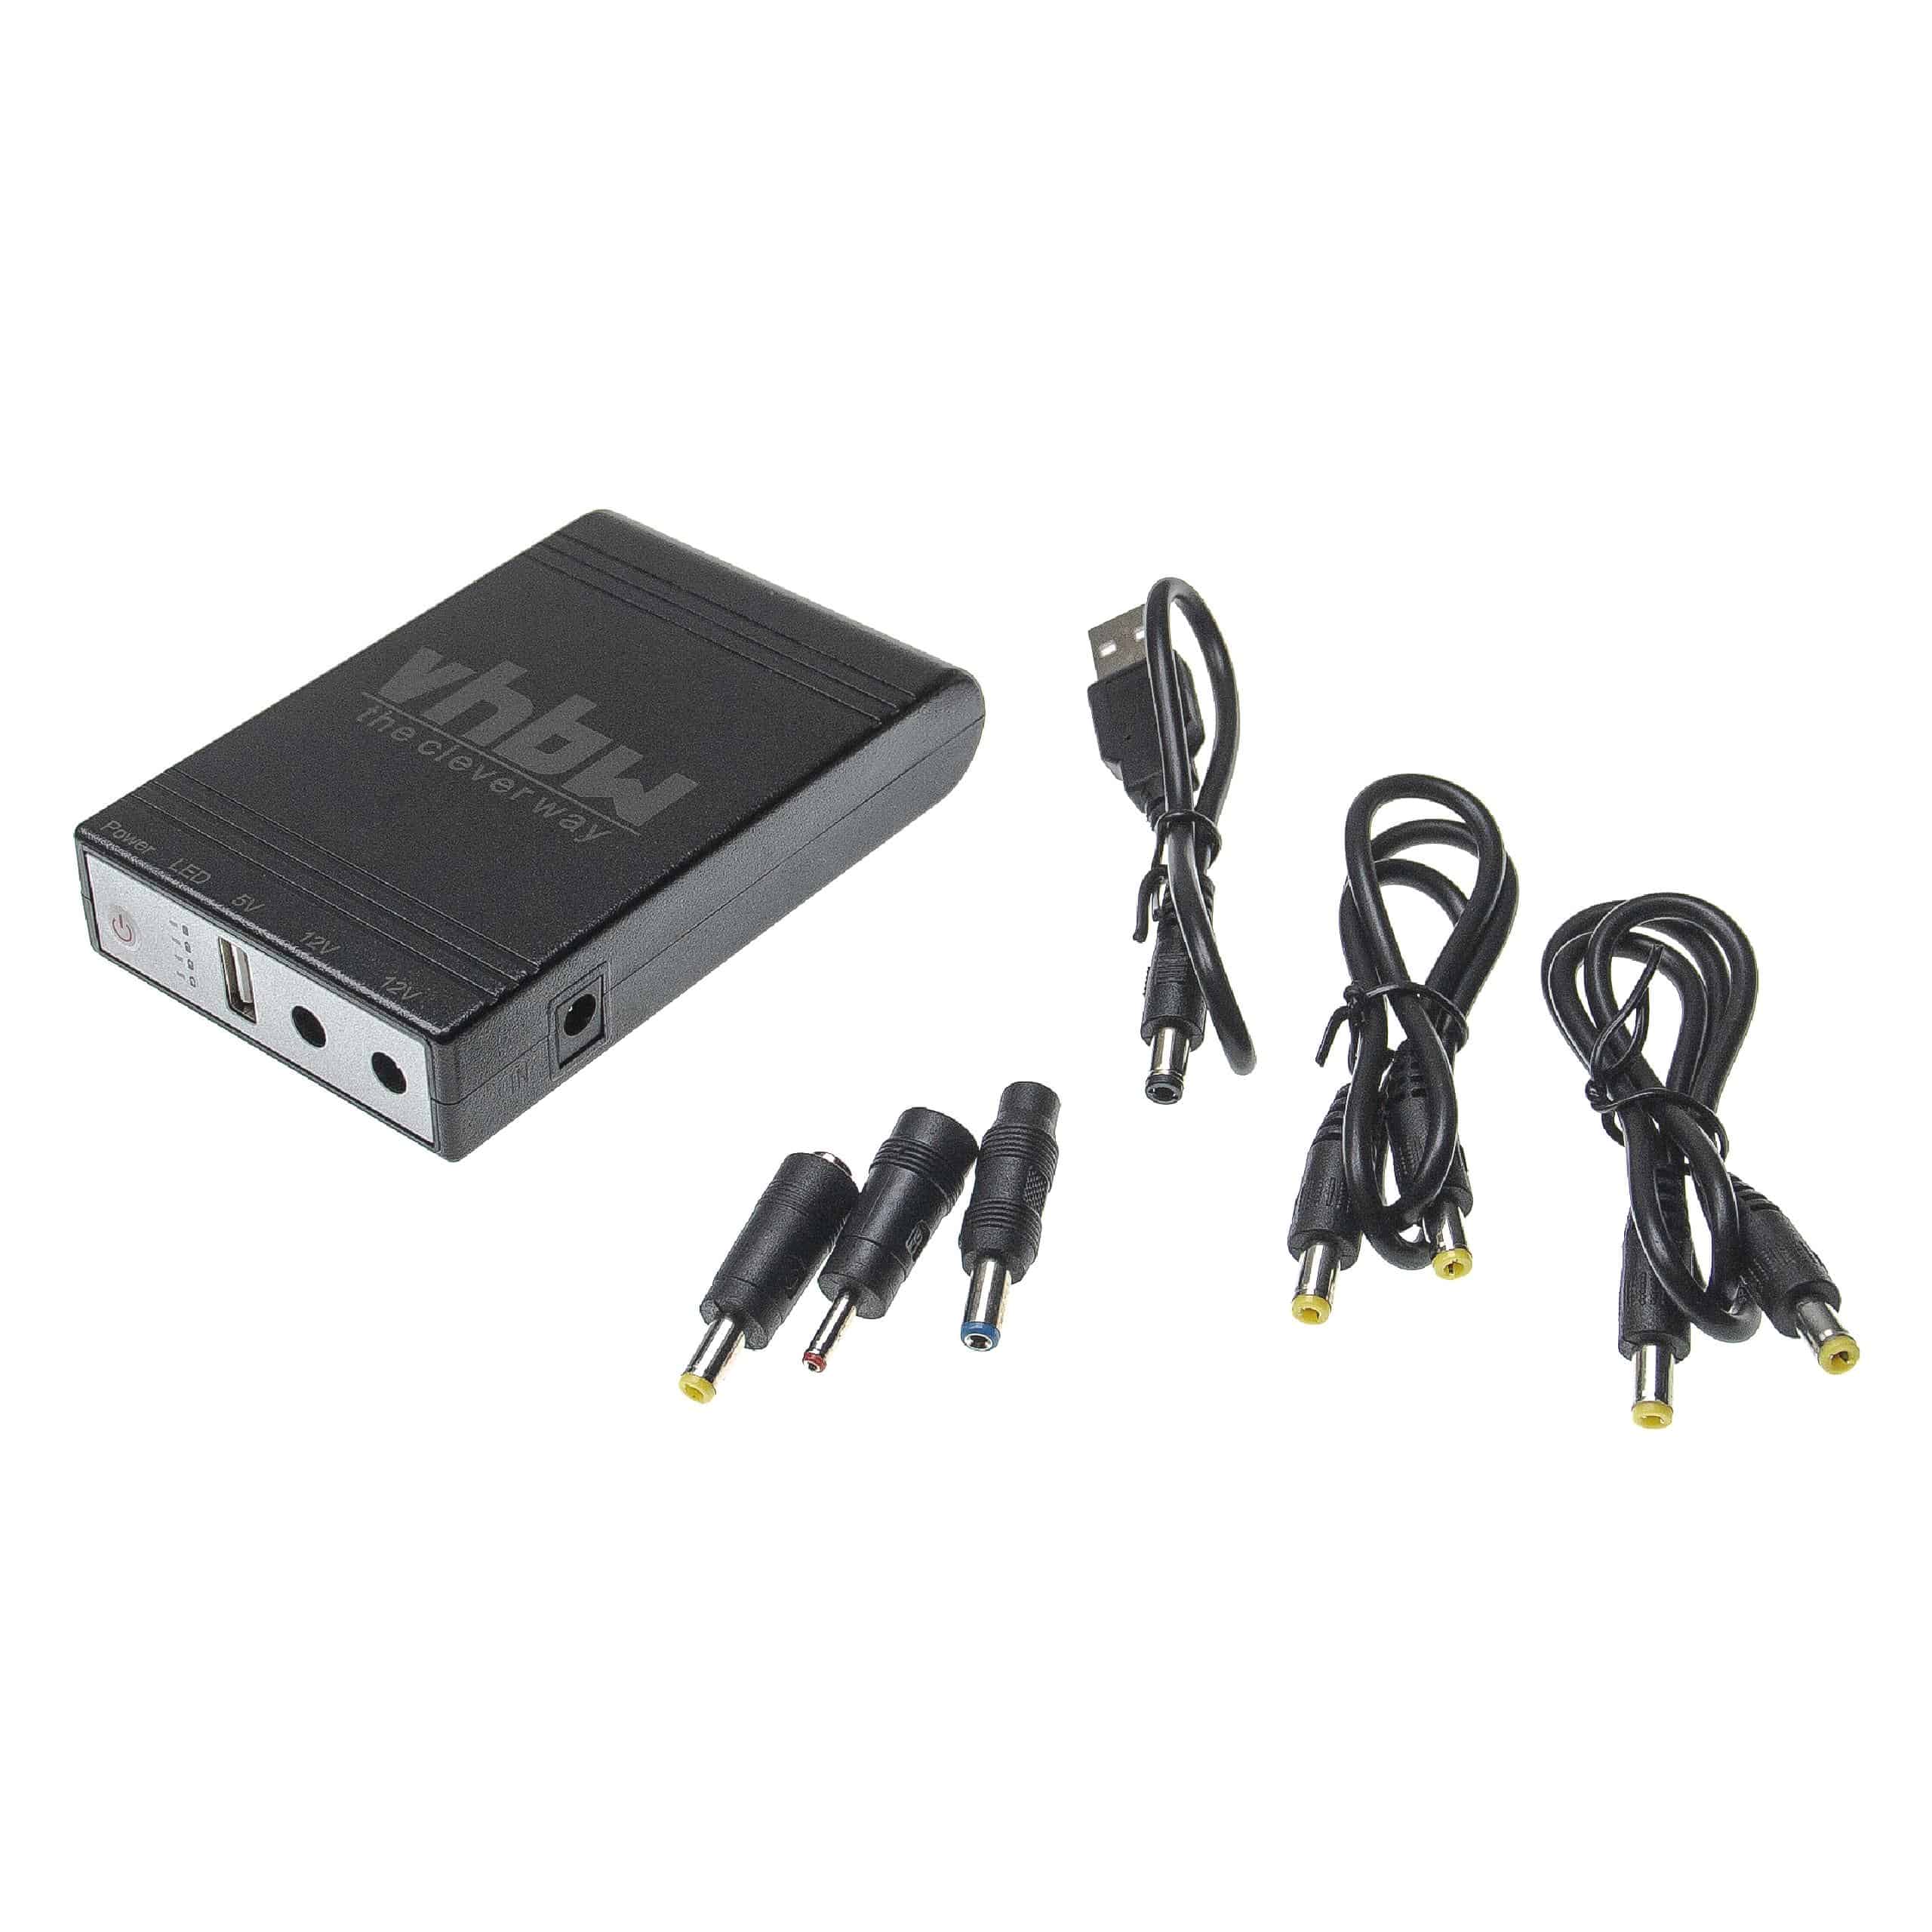 Mini UPS per router, IP cam, modem, computer ecc. - USB 5 V / DC 12 V, 1,0 A